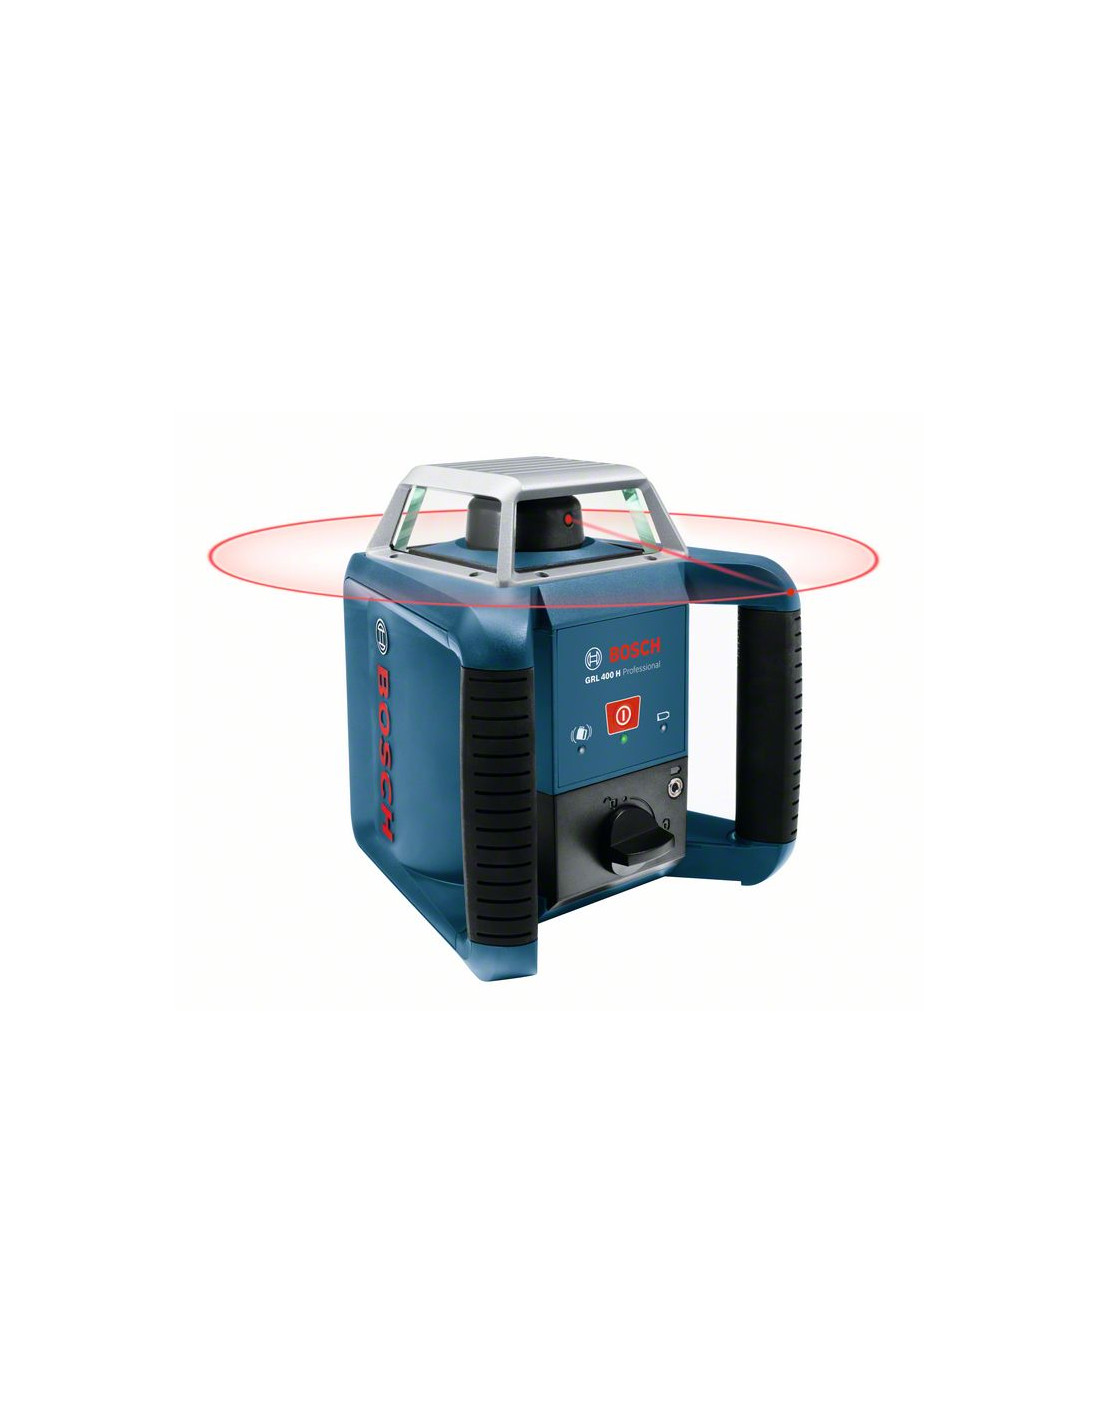 Laser rotatif connecté double pente GRL 600 CHV + Trépied BT 170 HD